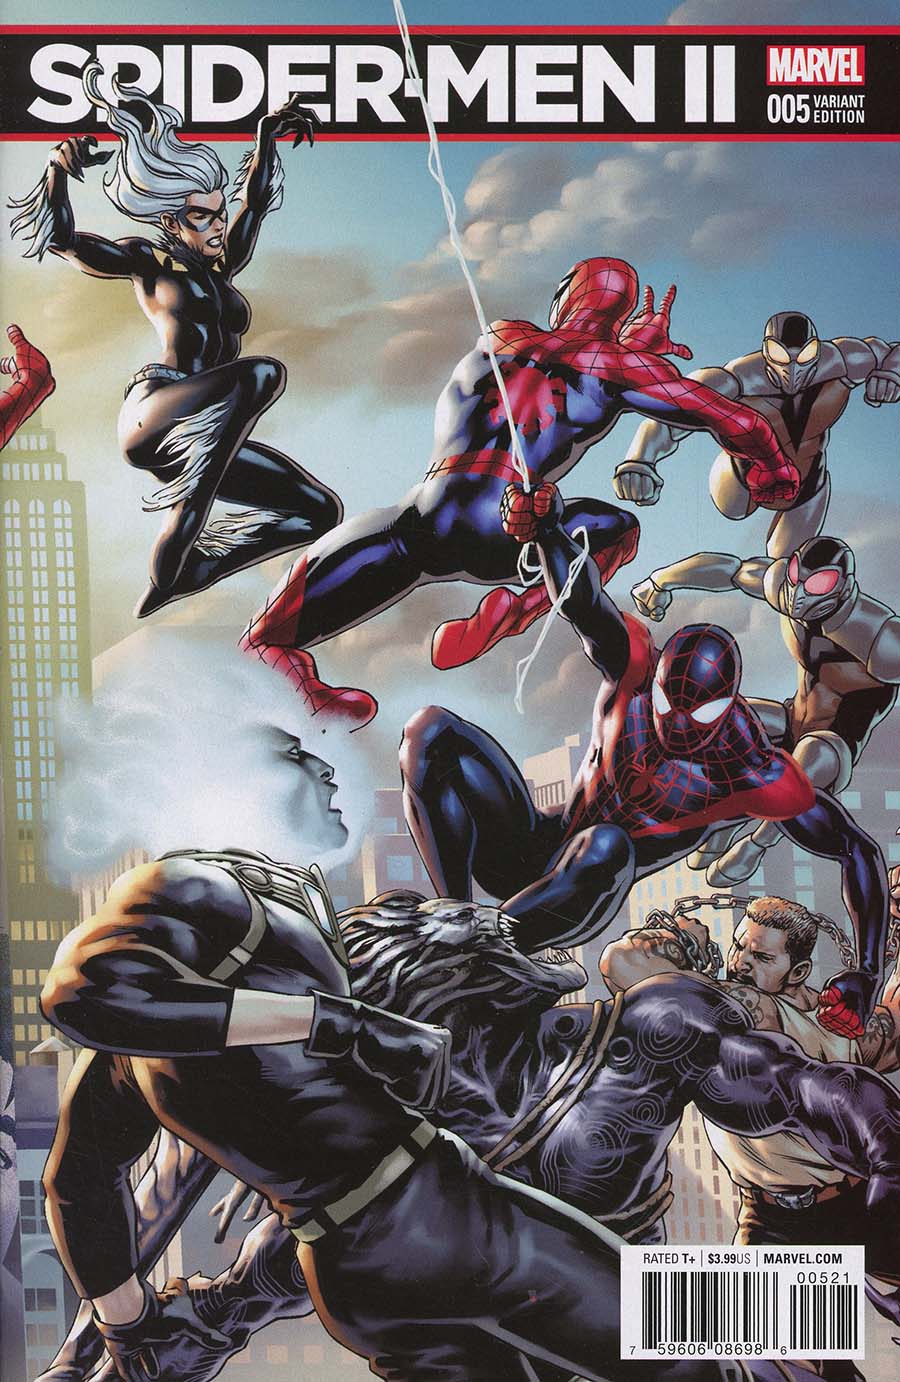 Spider-Men II #5 Cover B Variant Jesus Saiz Connecting Cover